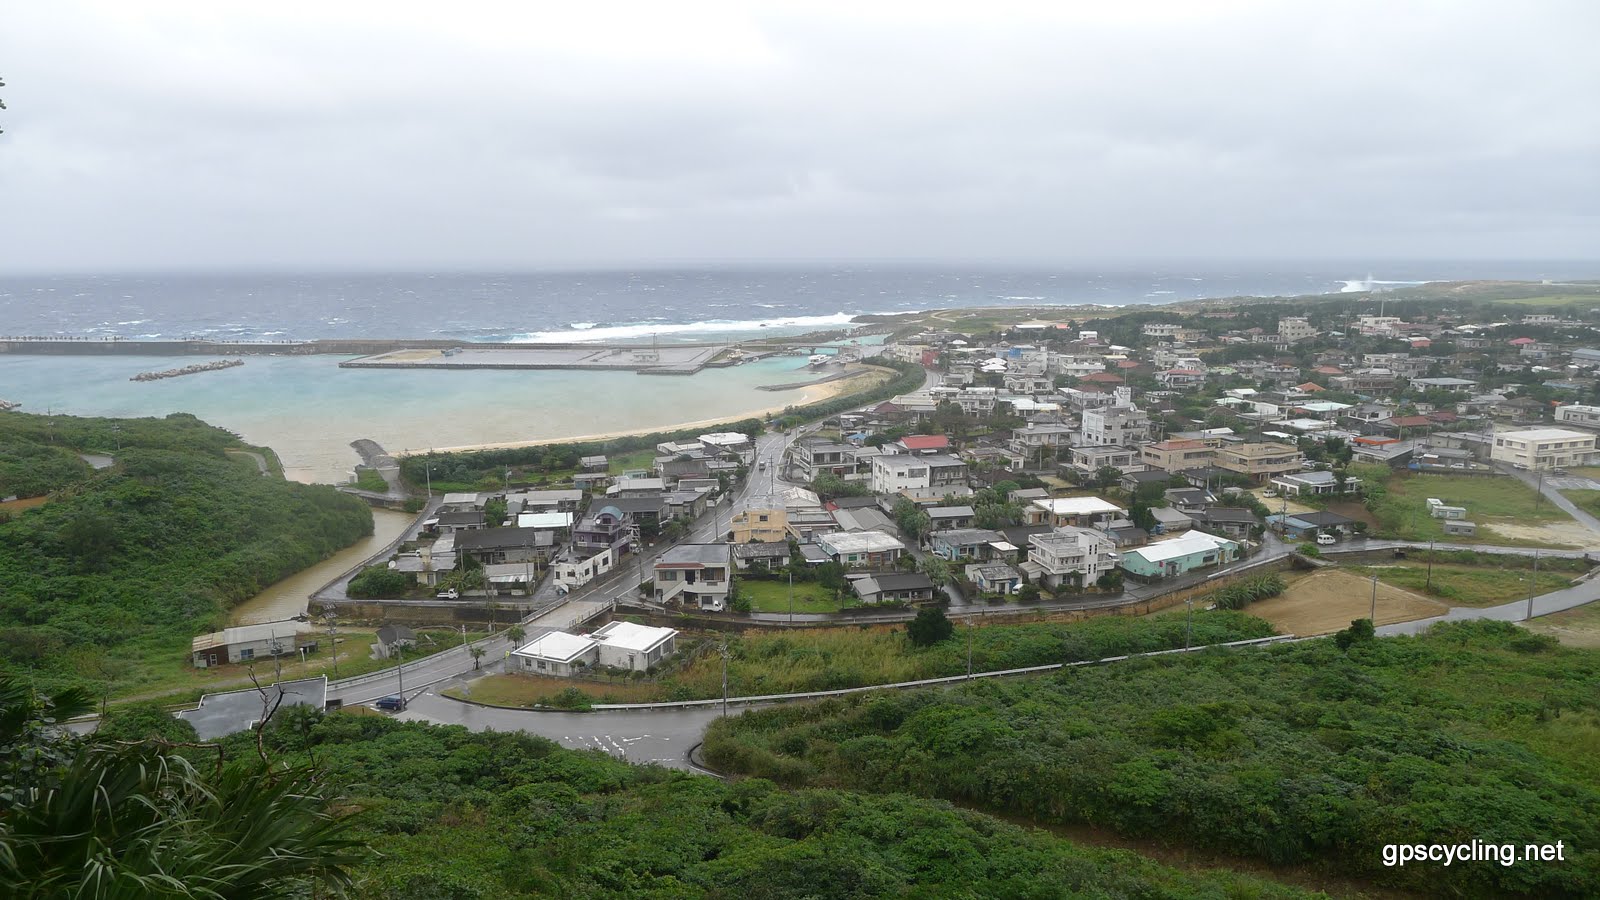 File:与那国島 - panoramio.jpg - Wikimedia Commons